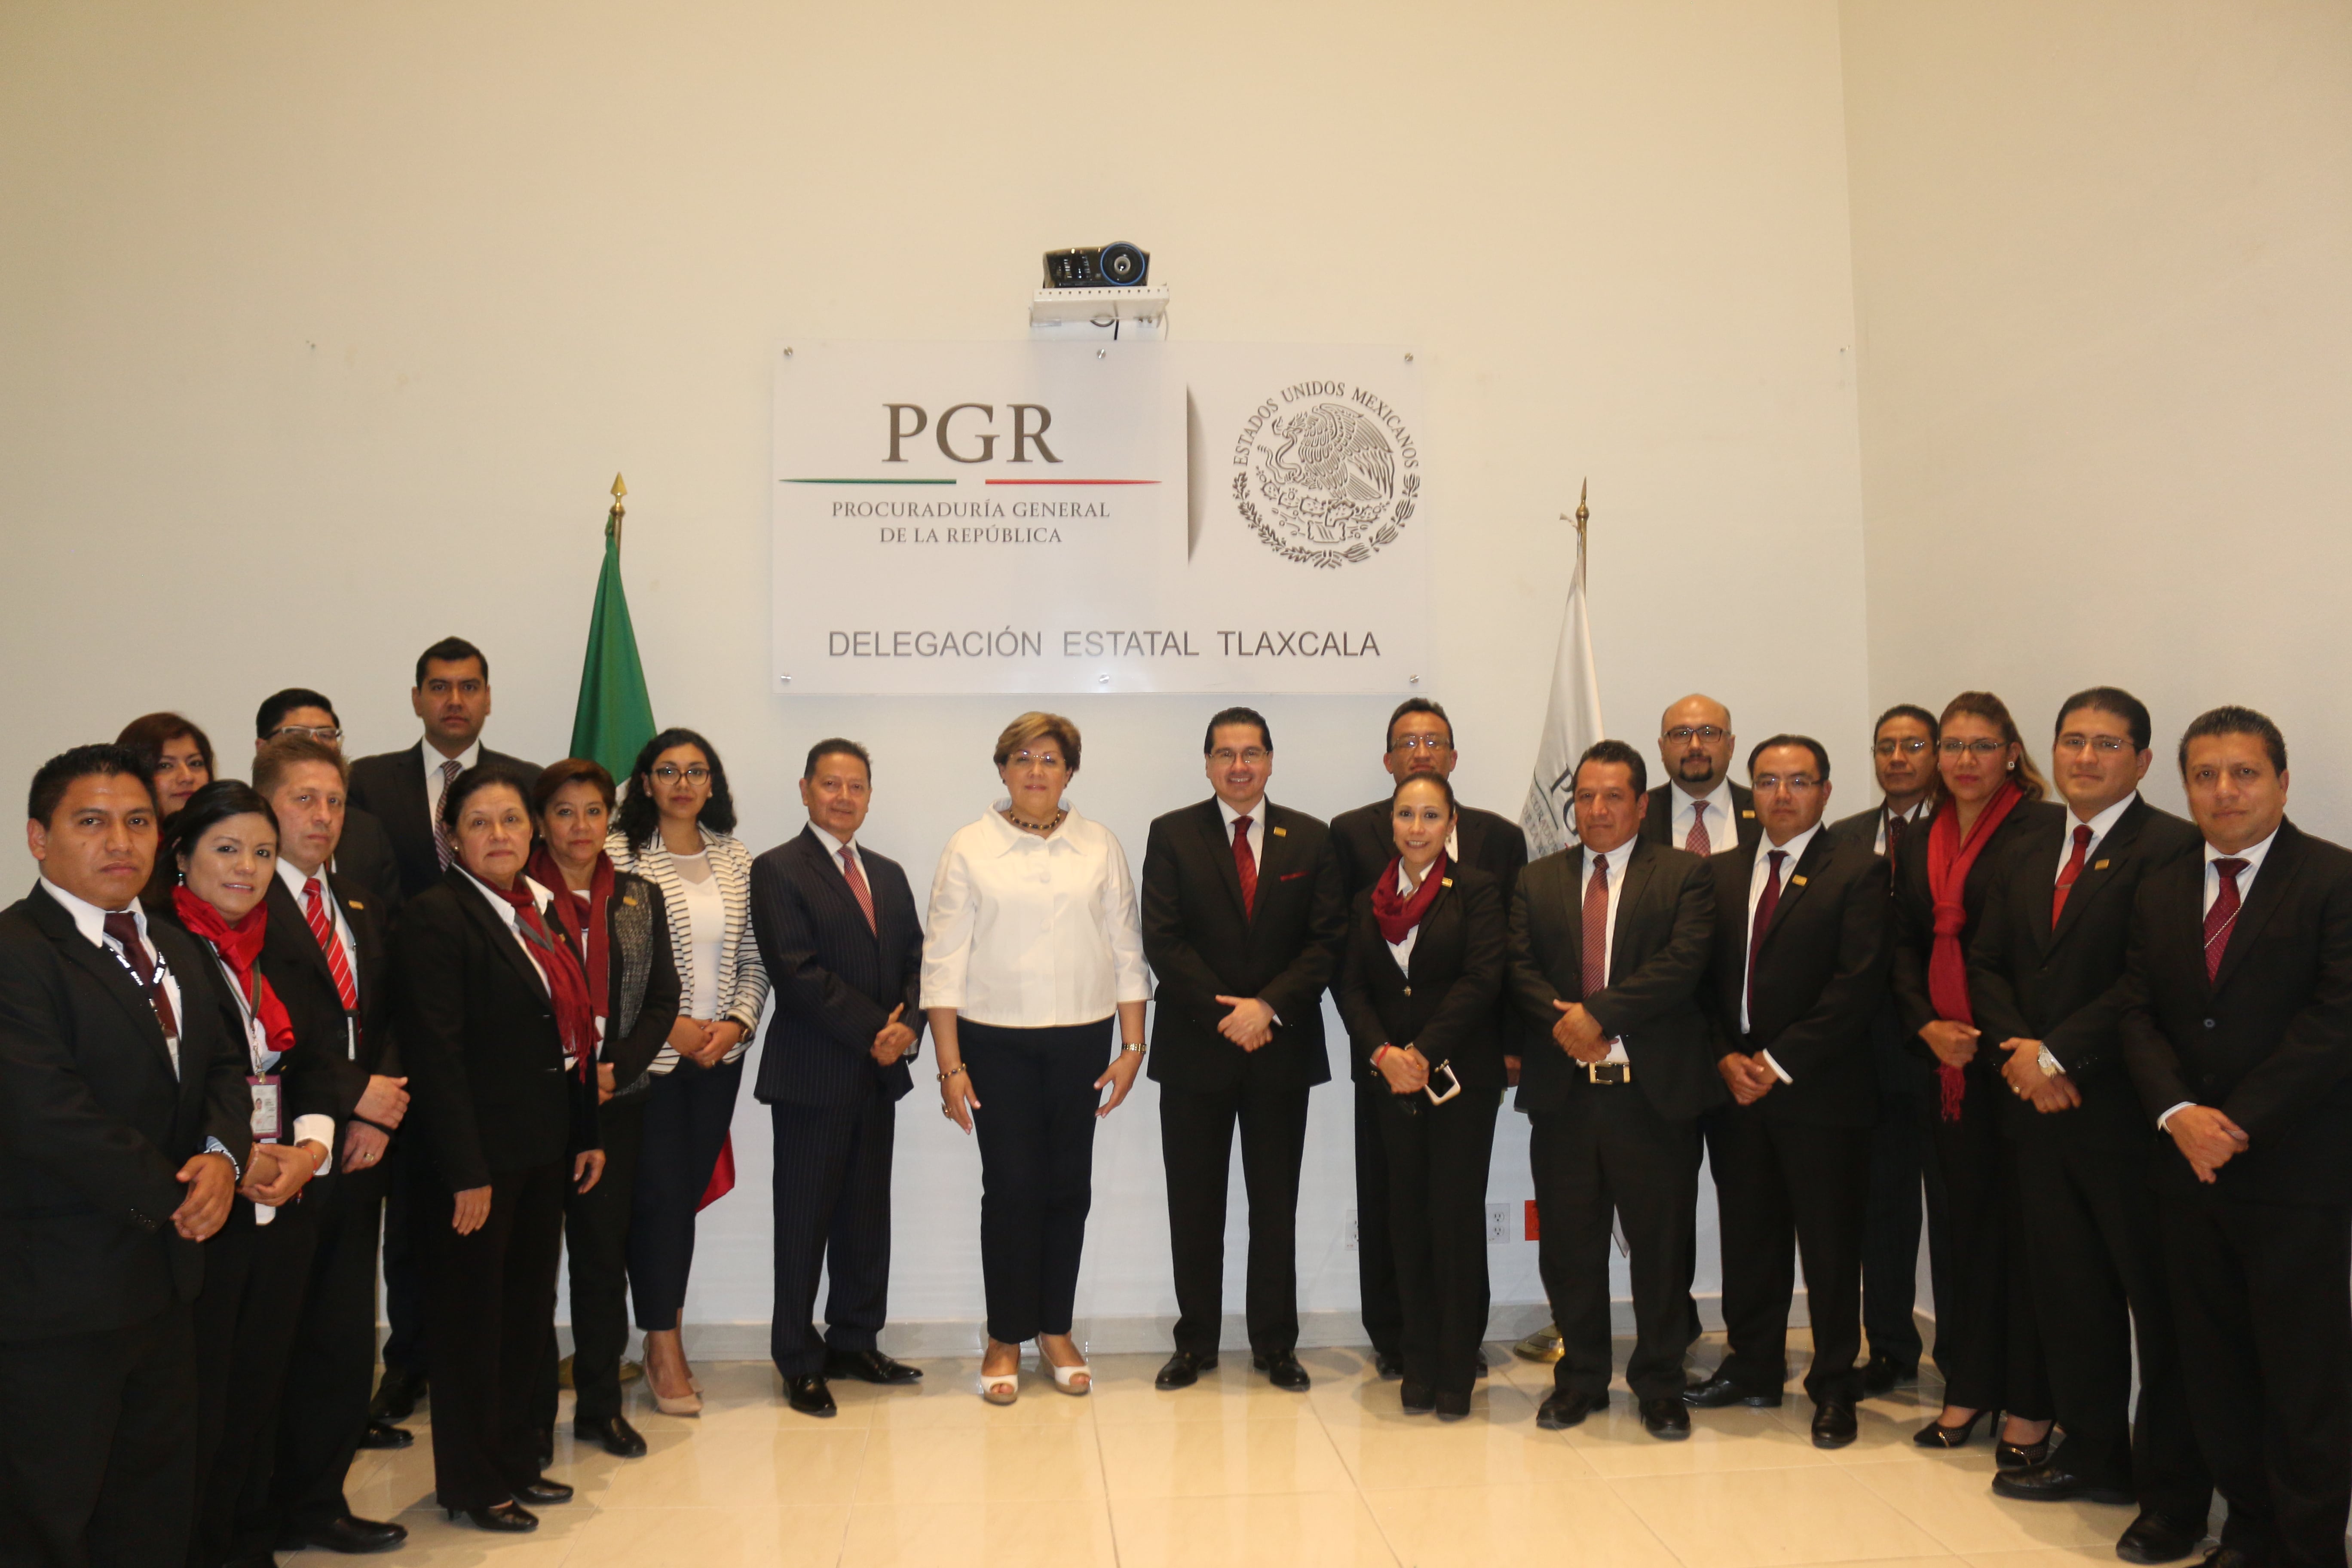 Recibe PGR Tlaxcala resultados de evaluación técnico jurídica por parte de visitaduría general